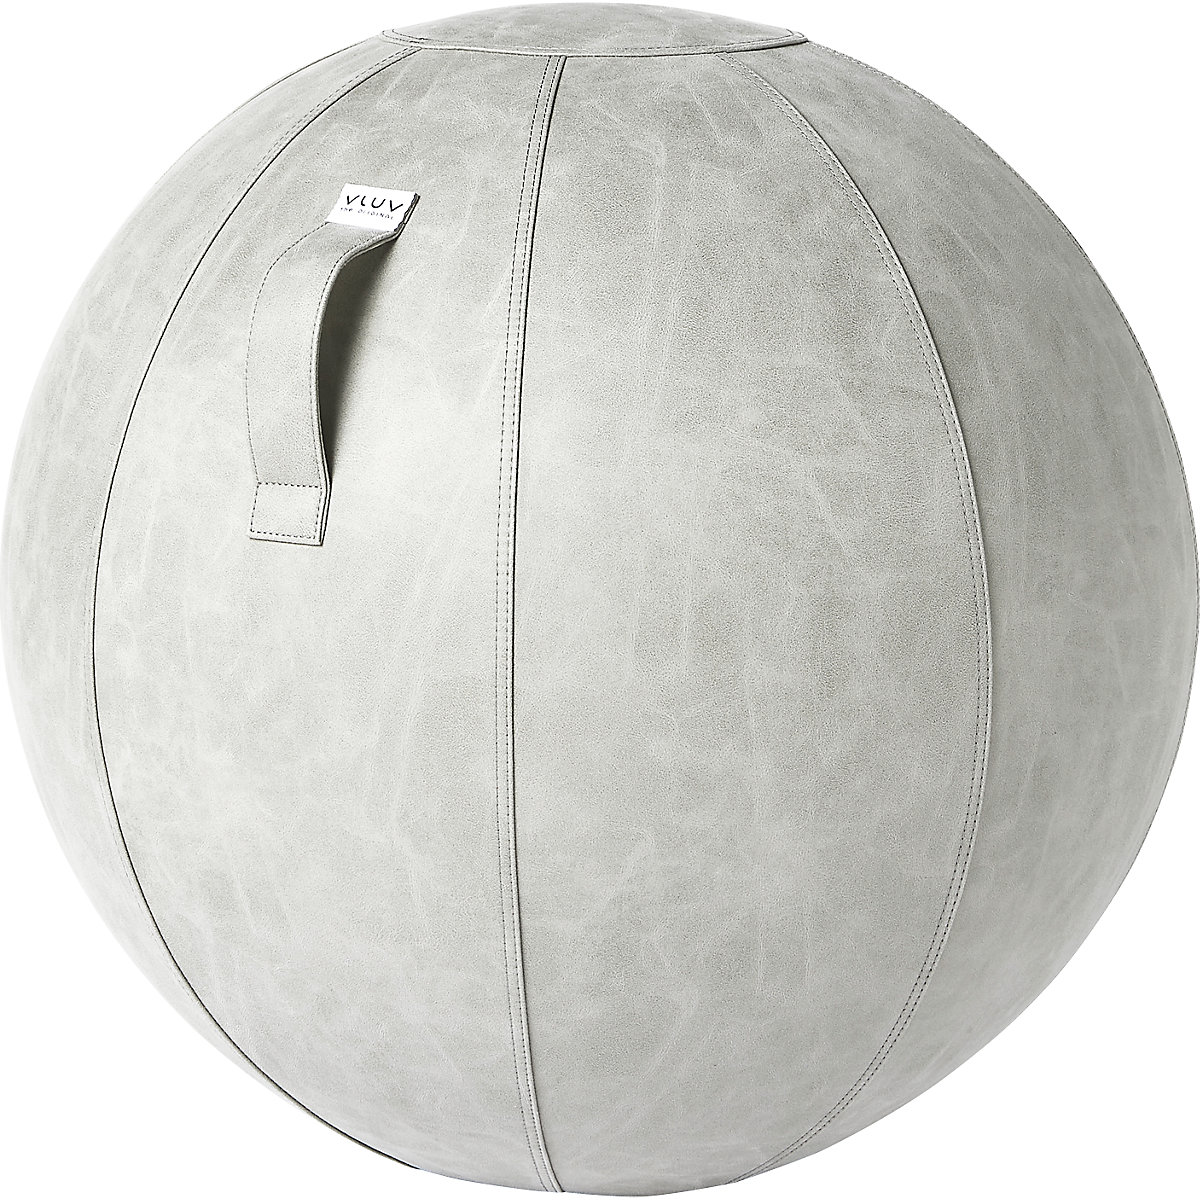 VEGA Swiss ball – VLUV, vegan vinyl, 700 – 750 mm, cement-6